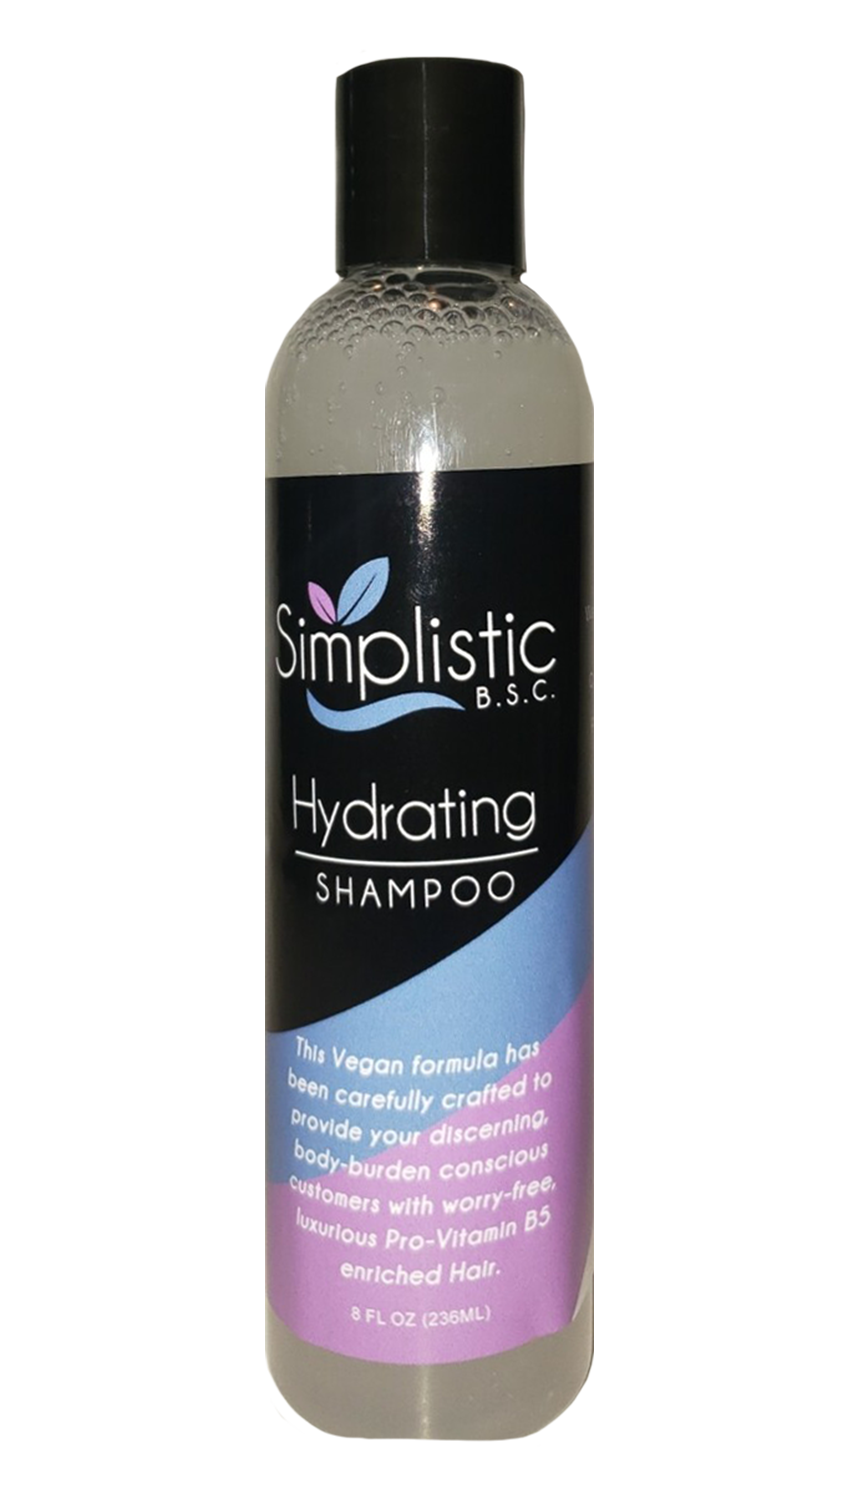 Hydrating Shampoo